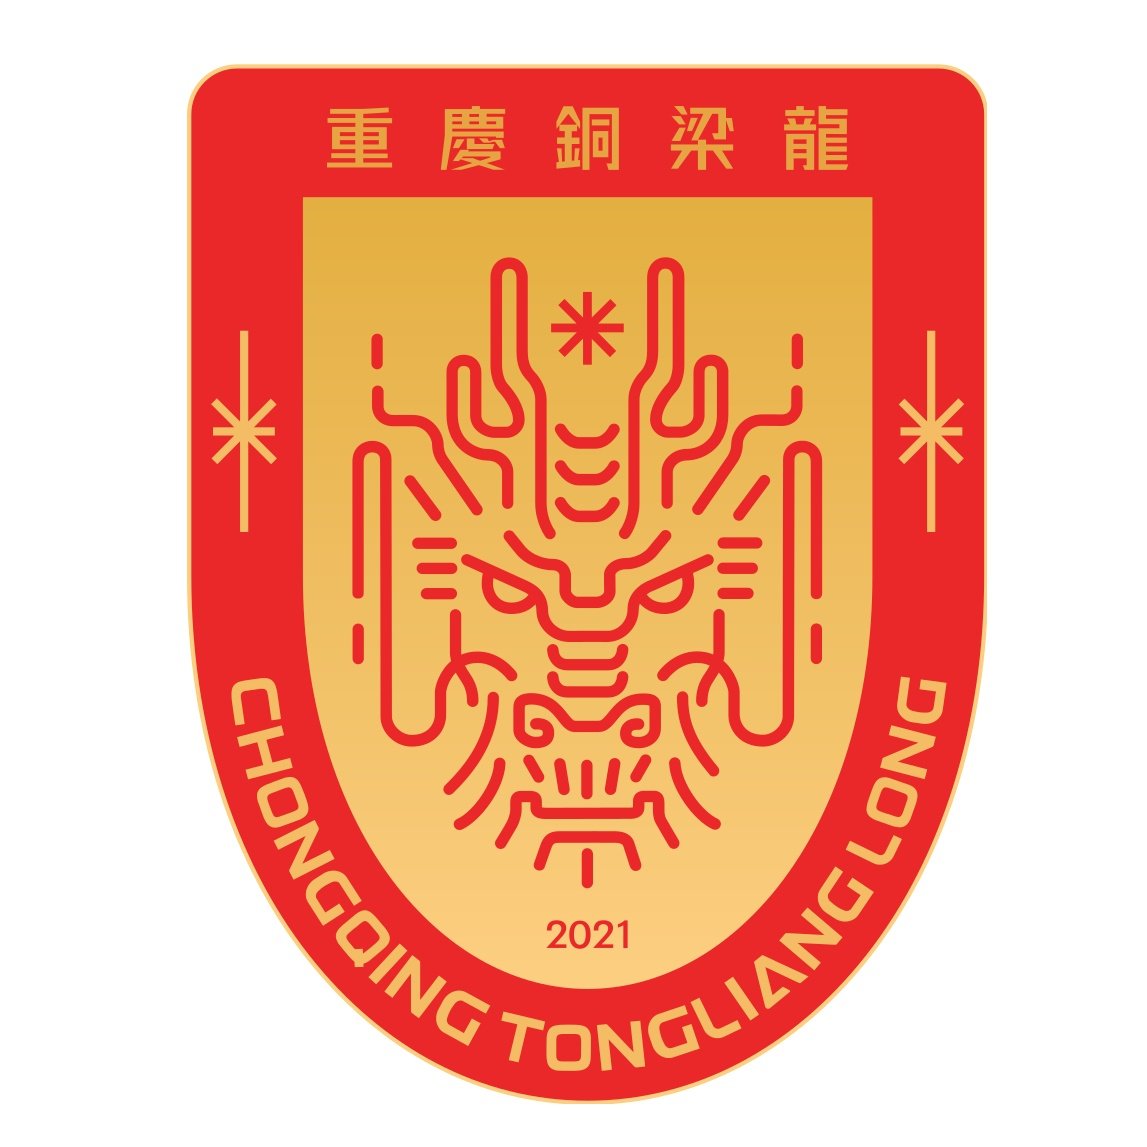 Escudo del Chongqing Tonglianglong